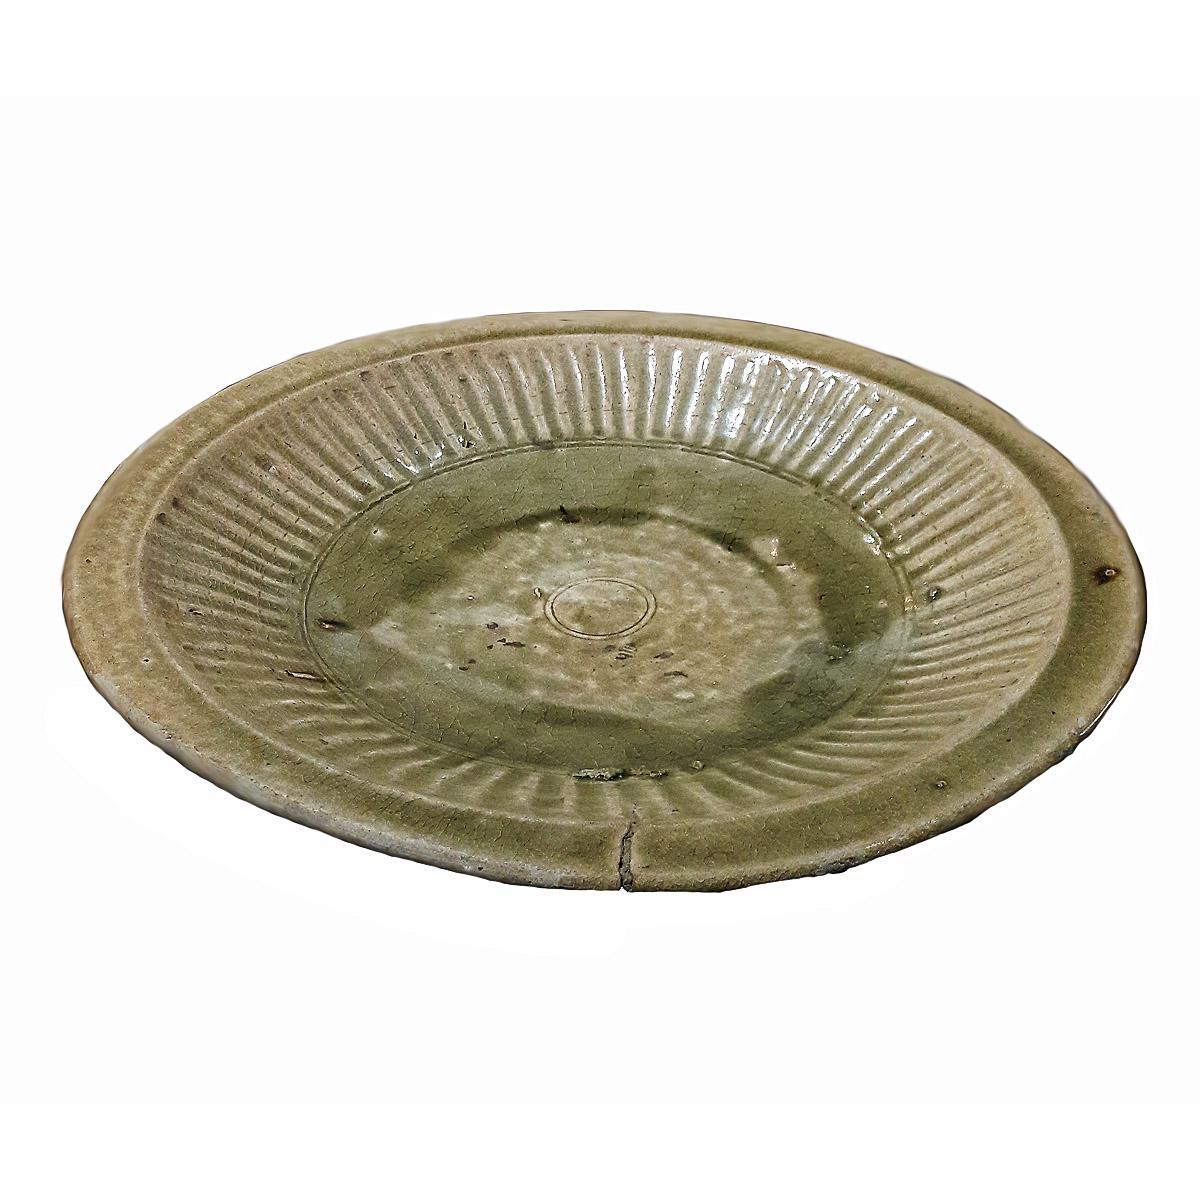 Ein seltener Seladonteller aus den Brennöfen von Sangkhalok, einem der wichtigsten Zentren der thailändischen Keramik während der Sukhotai-Periode (1230-1438) 

Der für sein Alter gut erhaltene Teller zeigt die uralte Technik der Celadon-Glasur mit